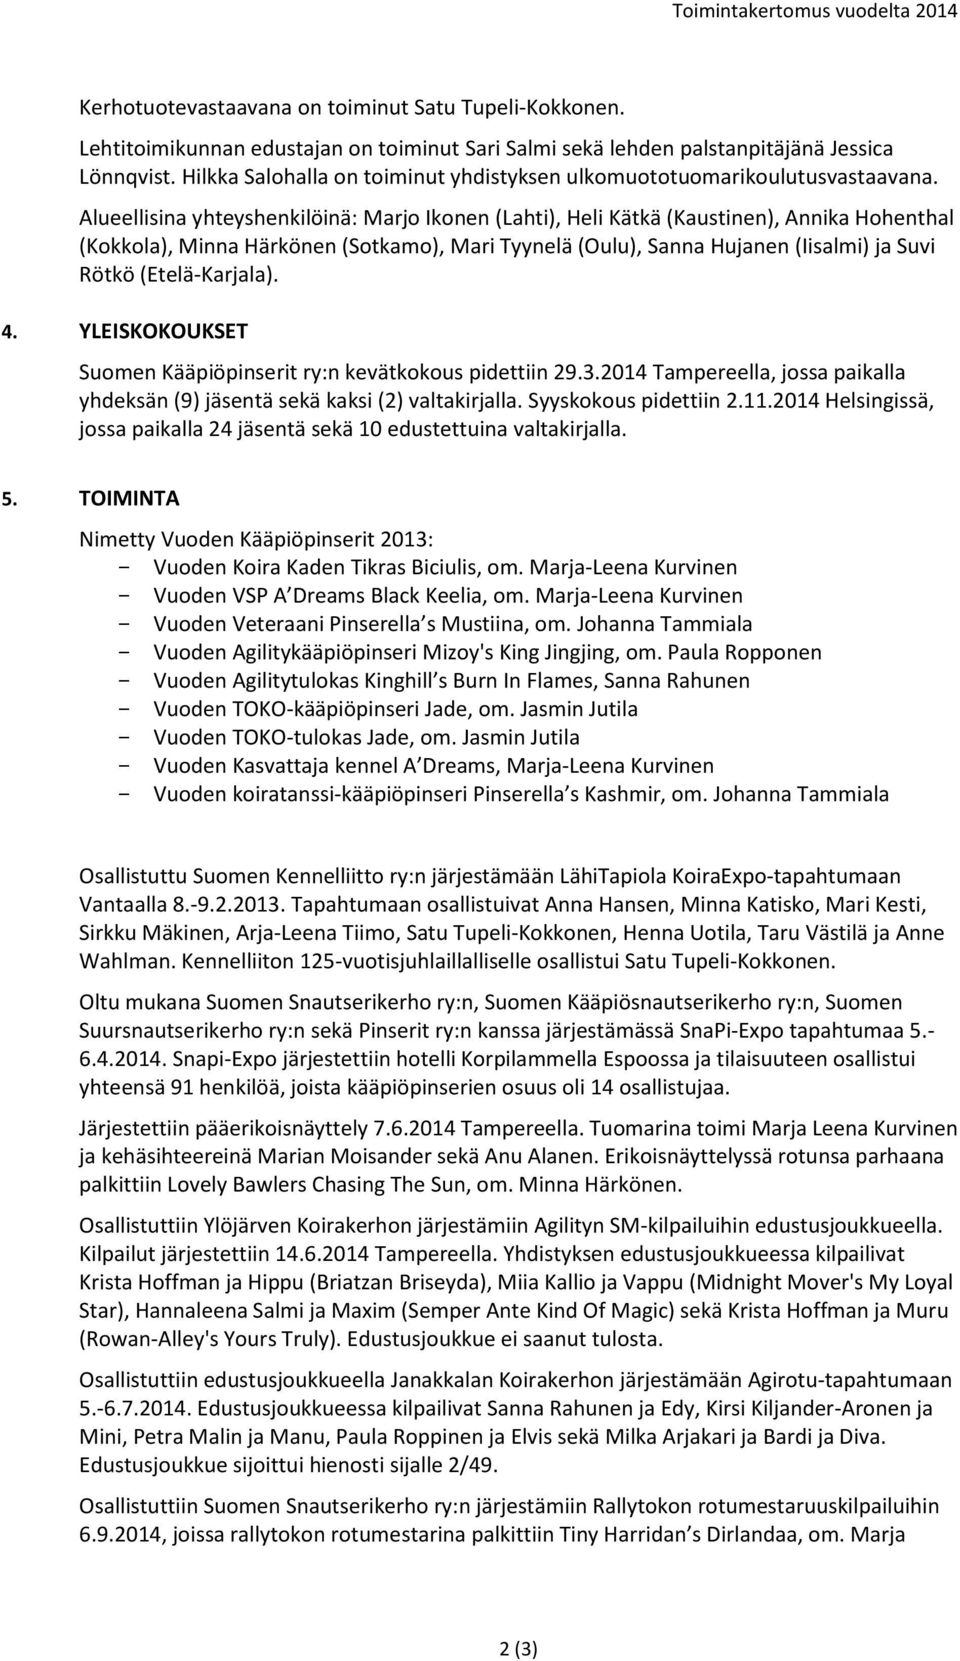 Alueellisina yhteyshenkilöinä: Marjo Ikonen (Lahti), Heli Kätkä (Kaustinen), Annika Hohenthal (Kokkola), Minna Härkönen (Sotkamo), Mari Tyynelä (Oulu), Sanna Hujanen (Iisalmi) ja Suvi Rötkö